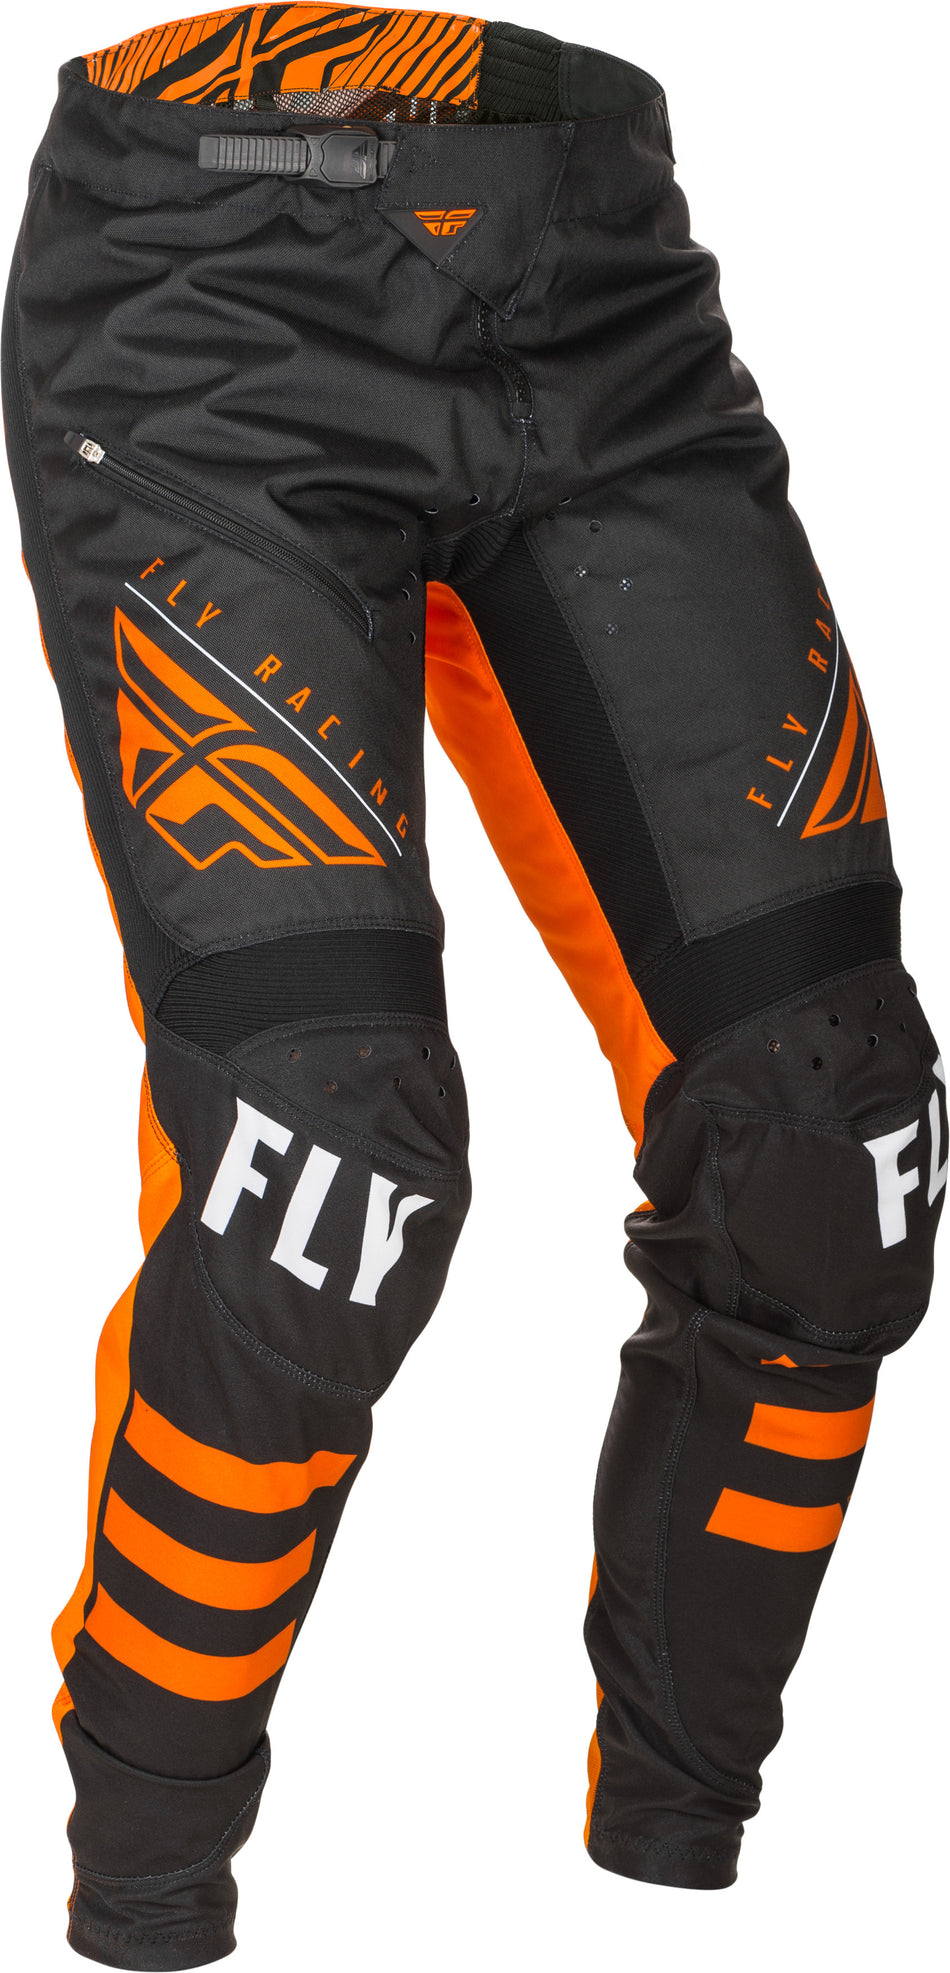 FLY RACING Kinetic Bicycle Pants Black/Orange Sz 24 373-04724